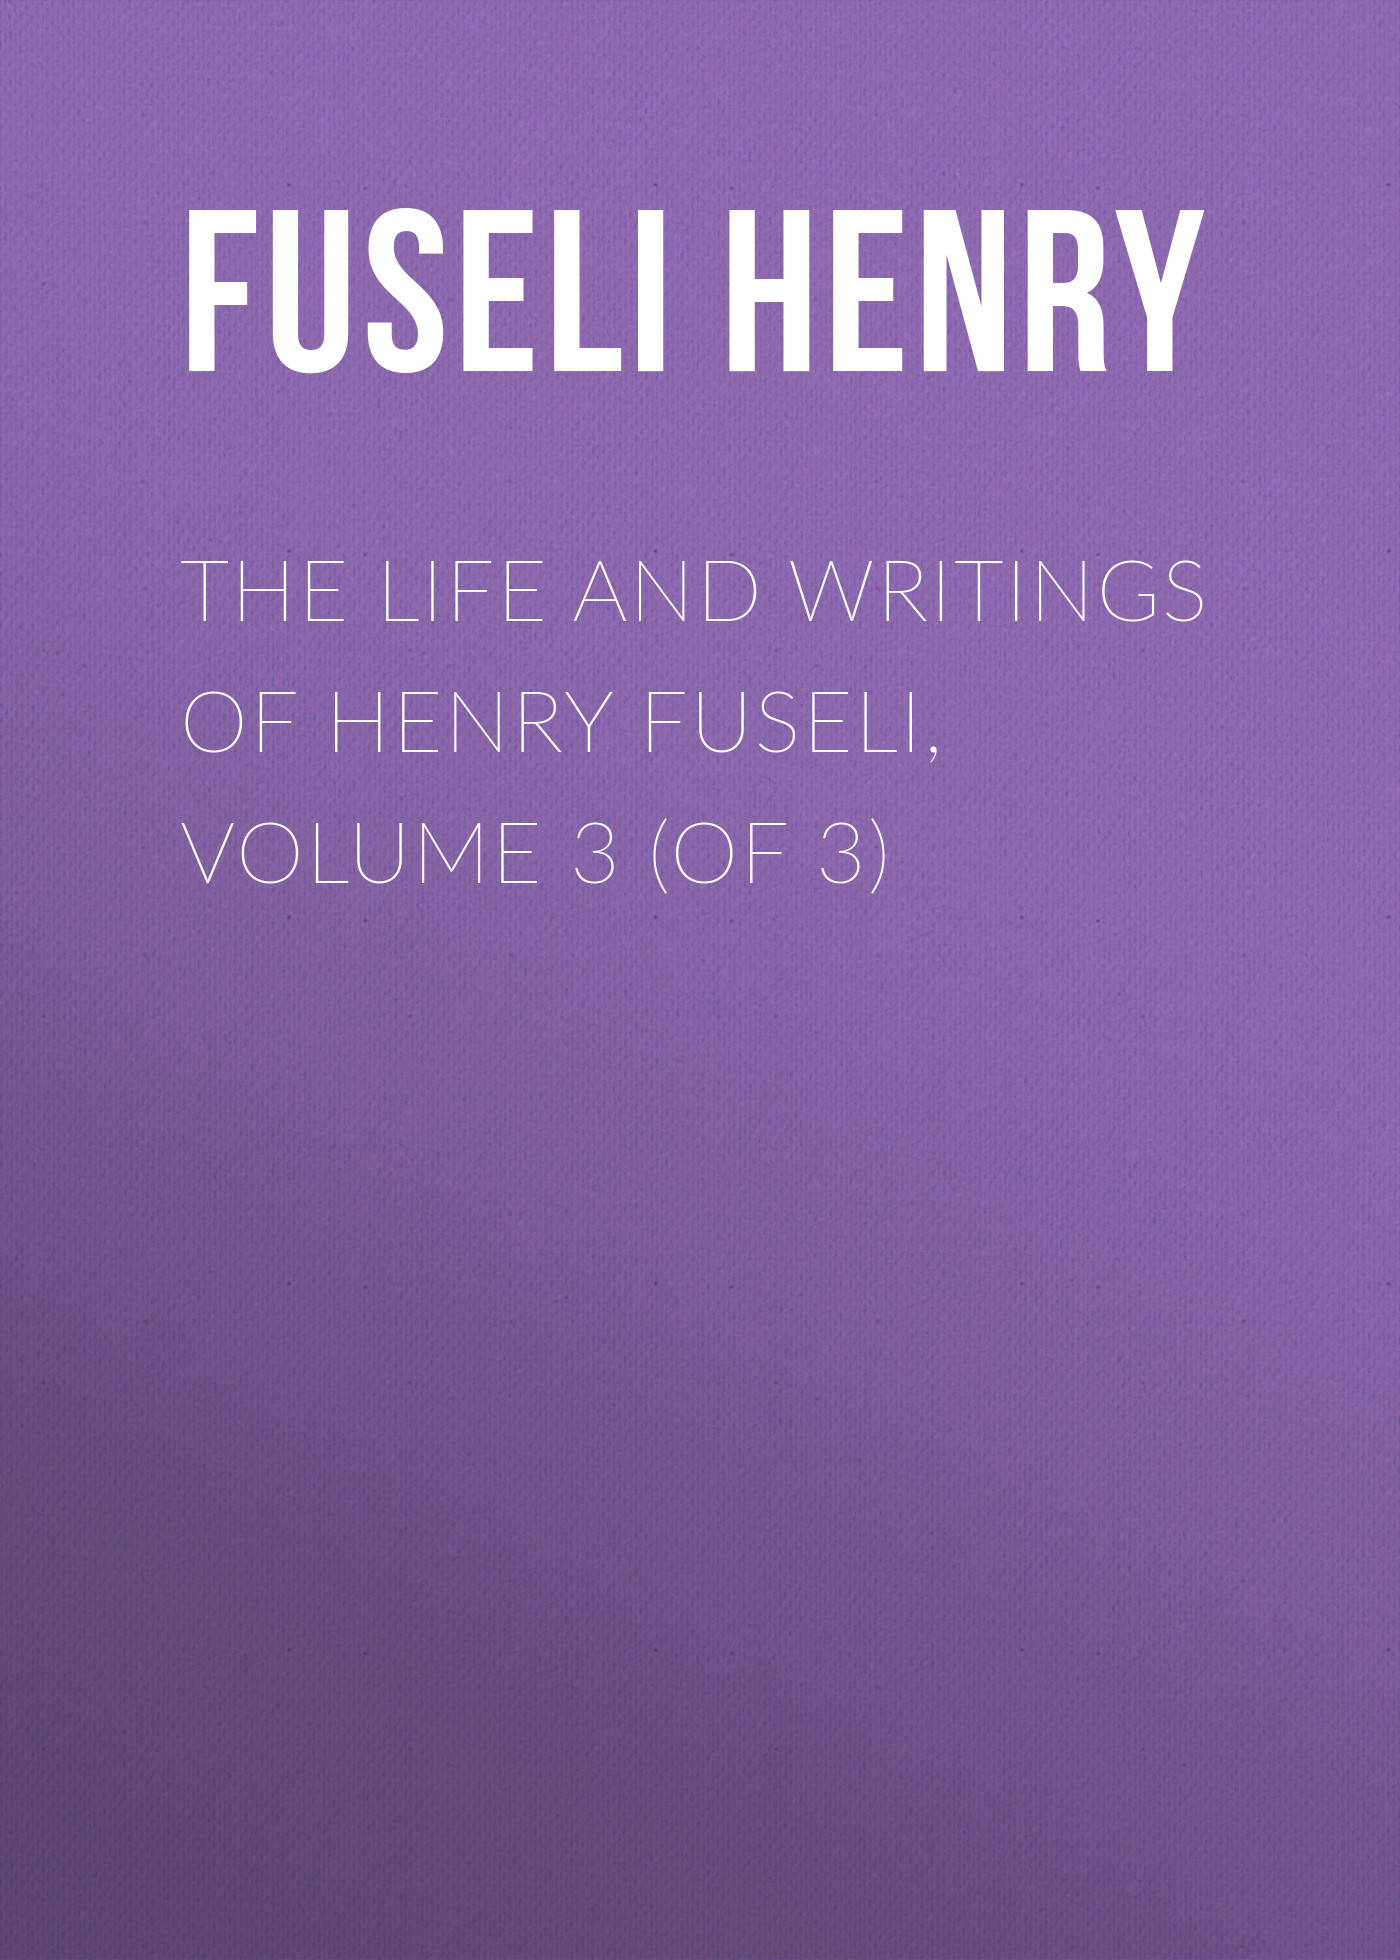 Книга The Life and Writings of Henry Fuseli, Volume 3 (of 3) из серии , созданная Henry Fuseli, может относится к жанру Изобразительное искусство, фотография, Зарубежная старинная литература, Зарубежная классика. Стоимость книги The Life and Writings of Henry Fuseli, Volume 3 (of 3)  с идентификатором 24858251 составляет 0 руб.